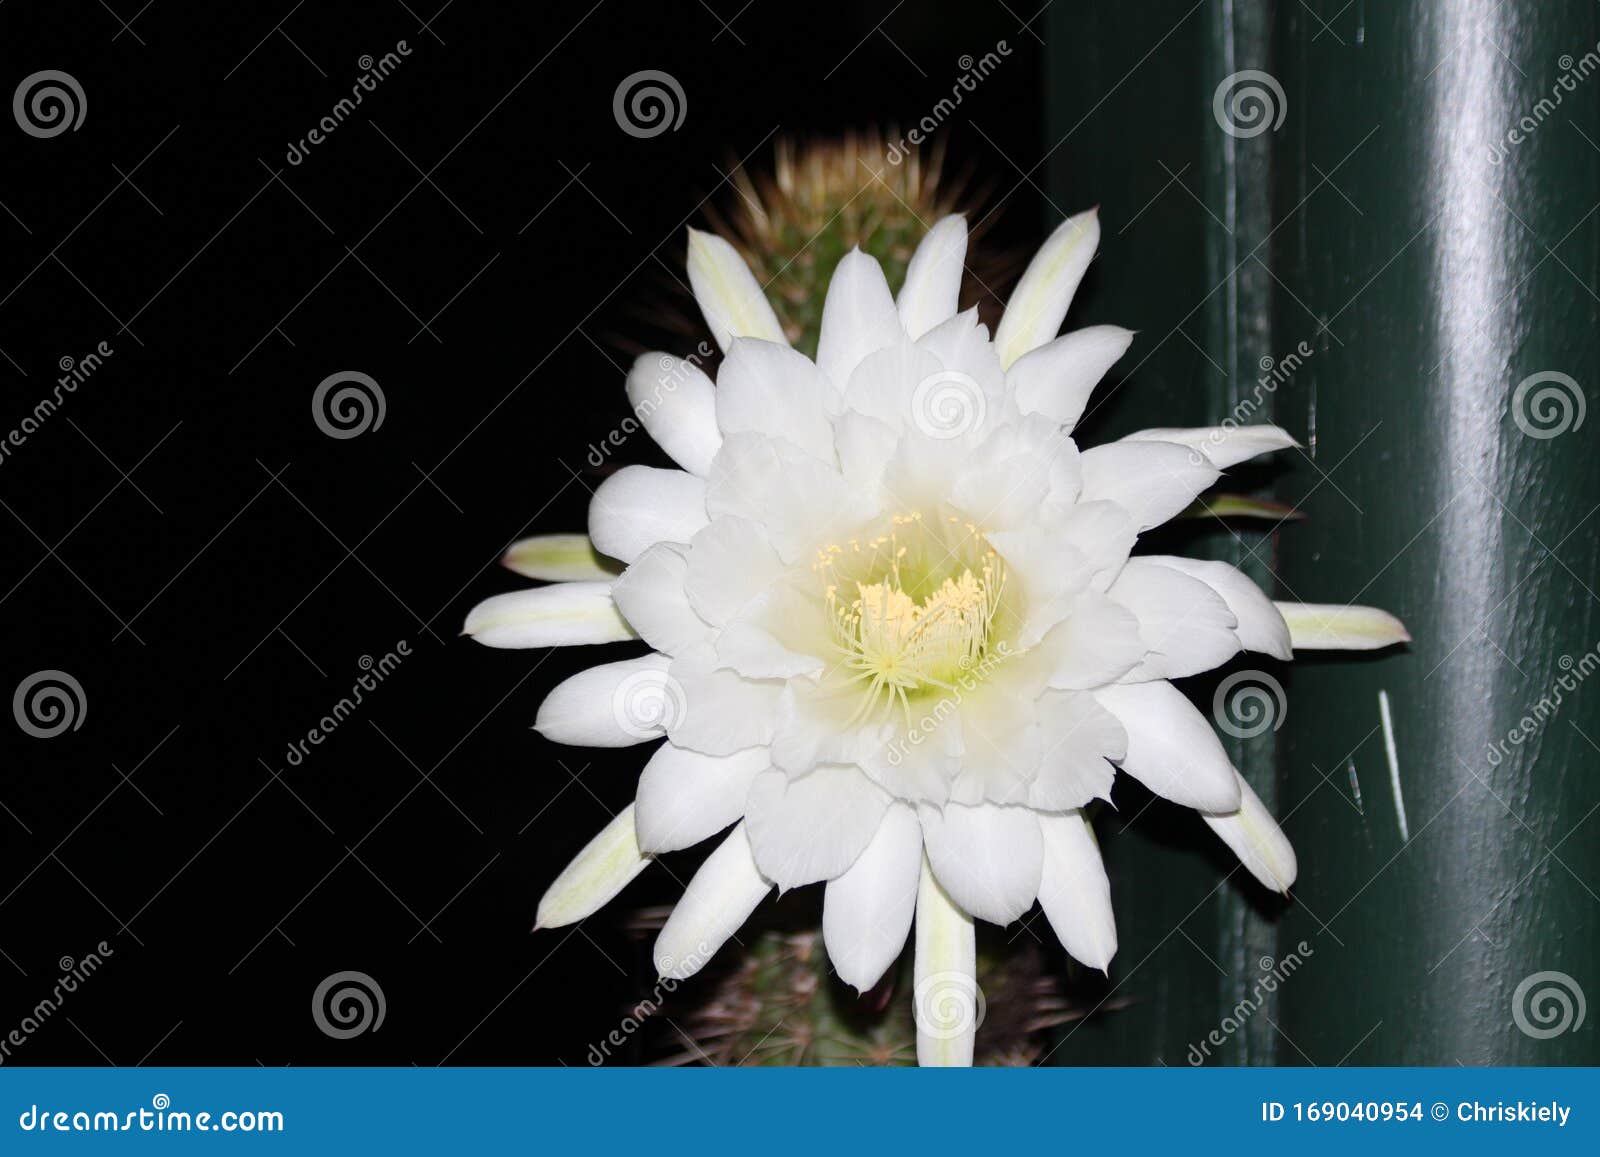 Une Fleur De Cactus La Nuit Photo stock - Image du herbe, capable: 169040954